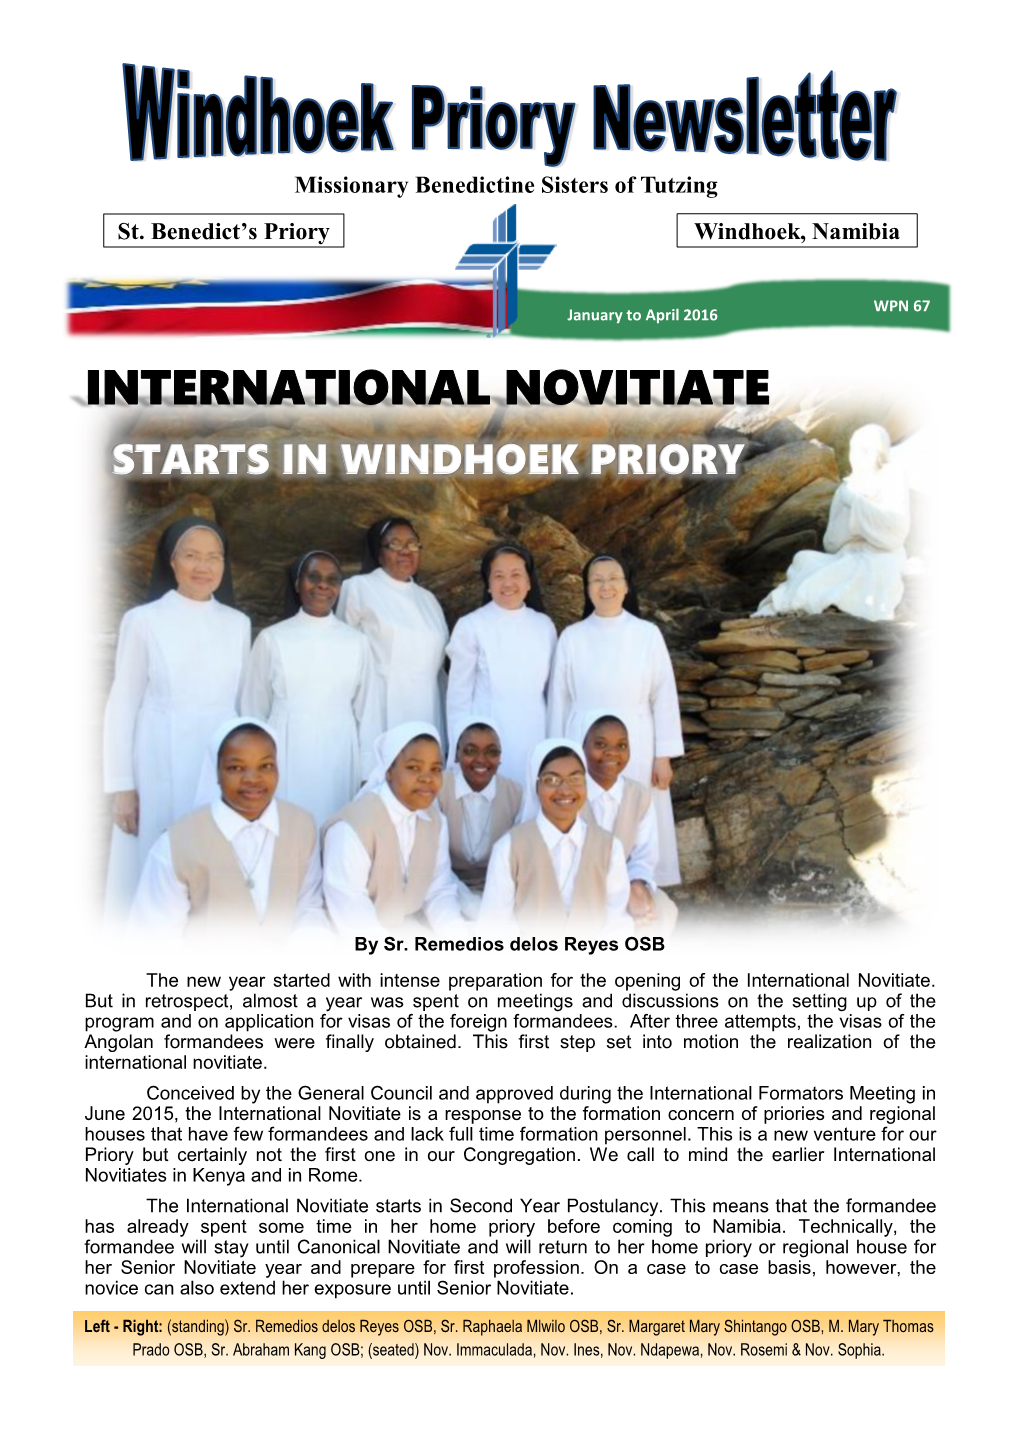 International Novitiate Starts in Windhoek Priory